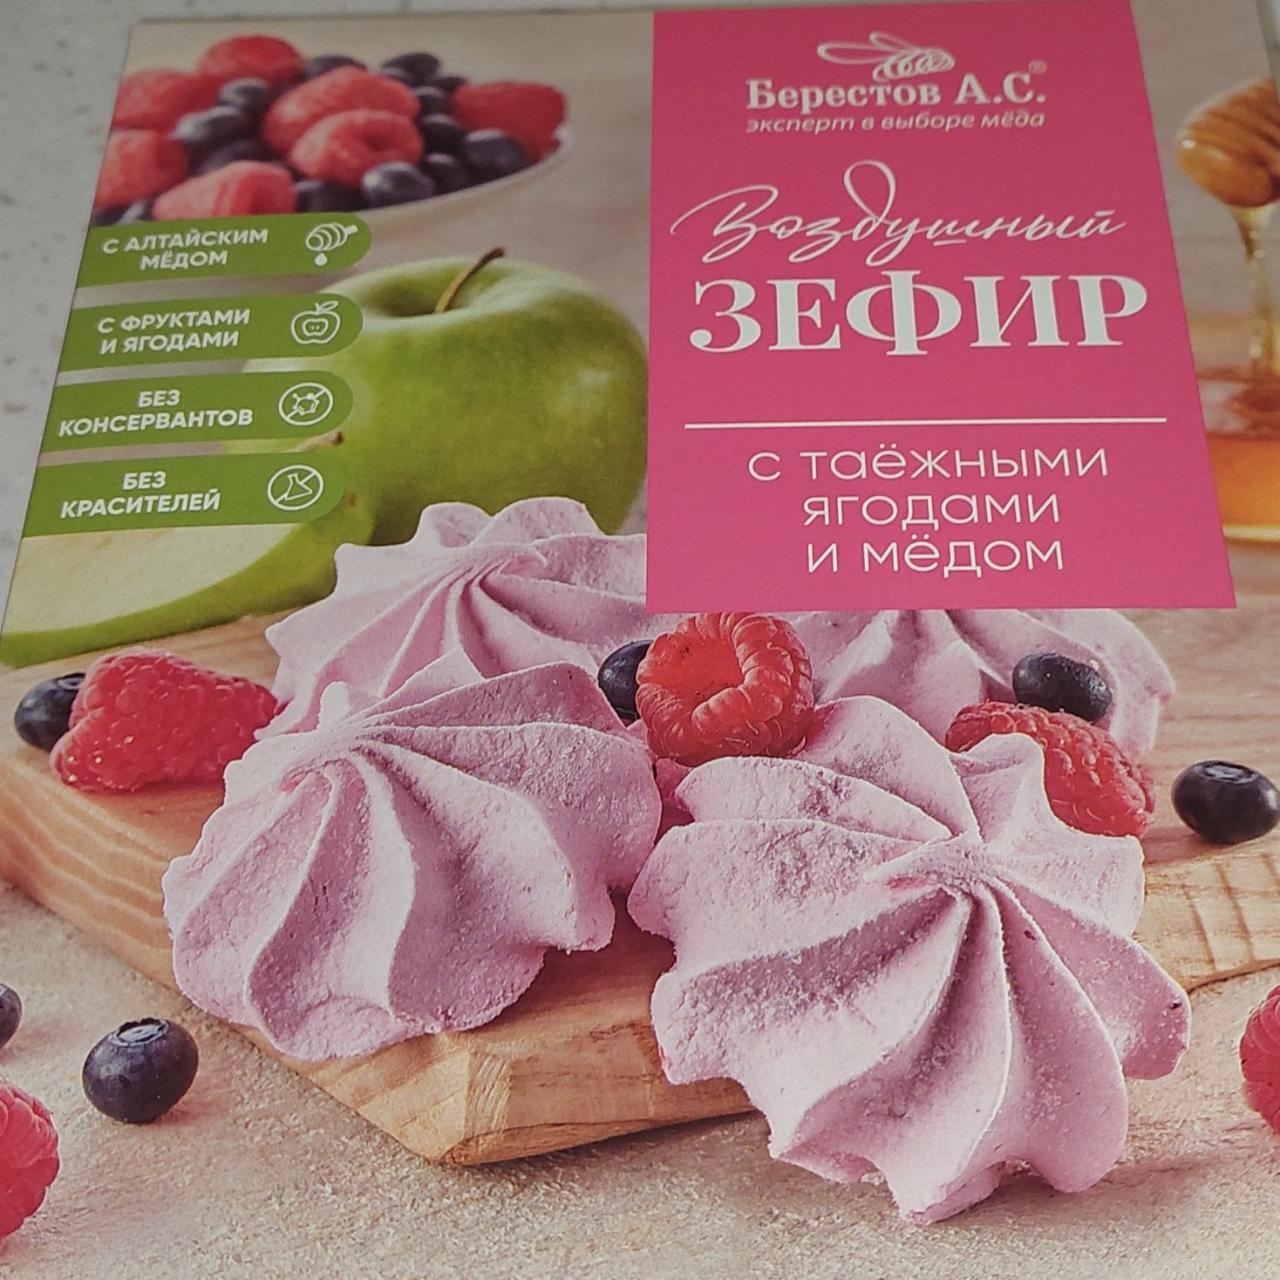 Фото - Воздушный зефир с таежными ягодами и медом Берестов А.С.